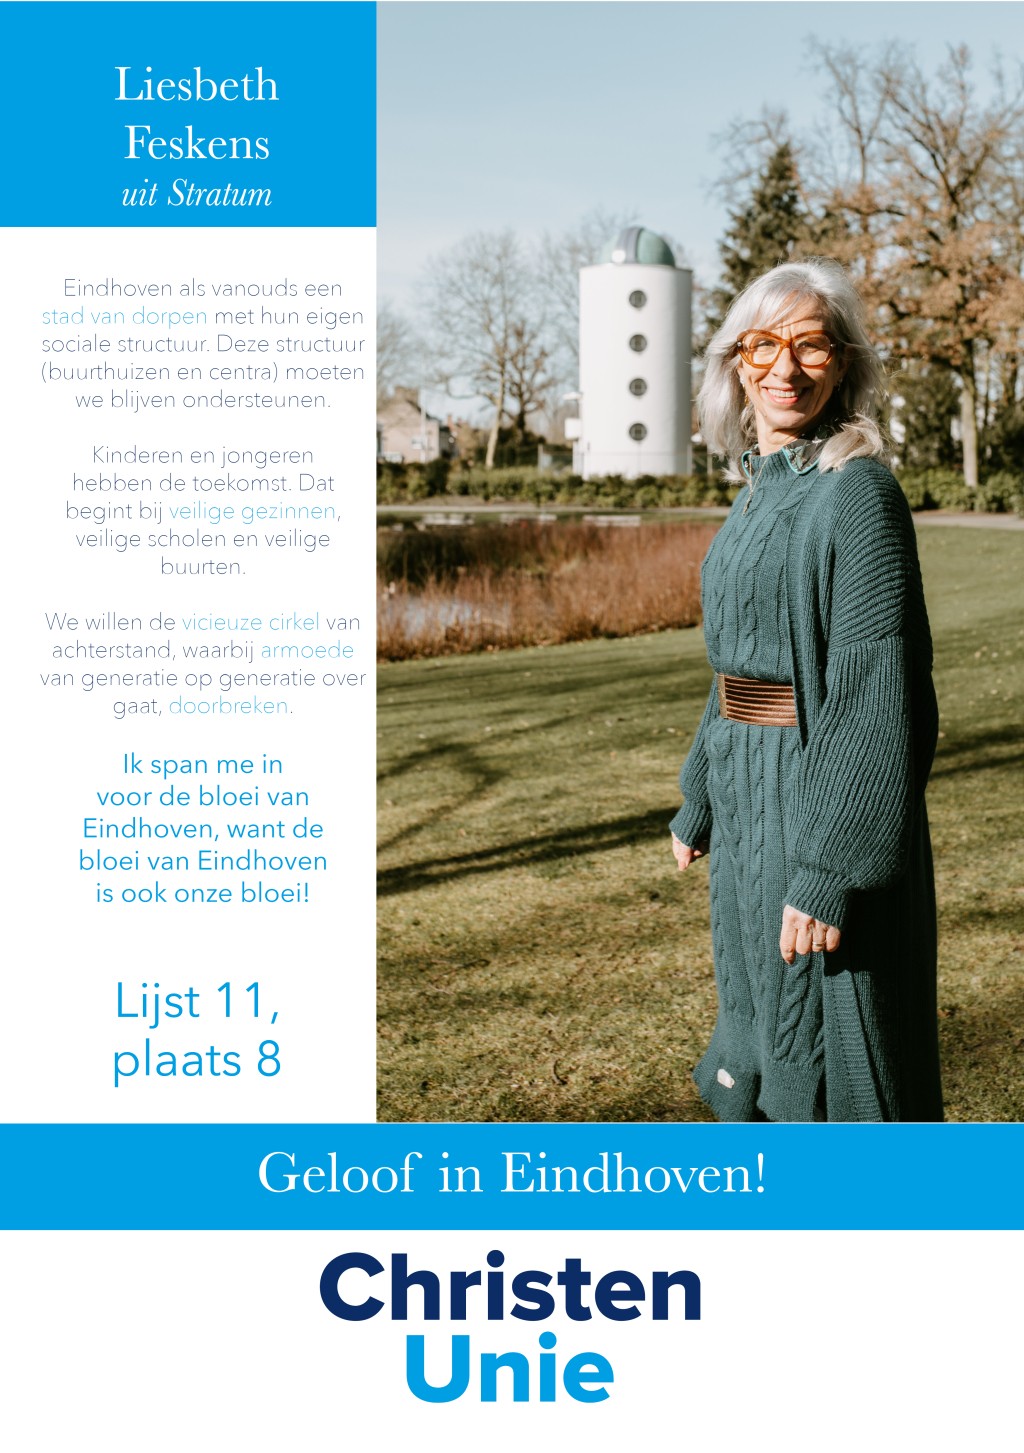 2022 GR22 - Kandidaten Eindhoven10